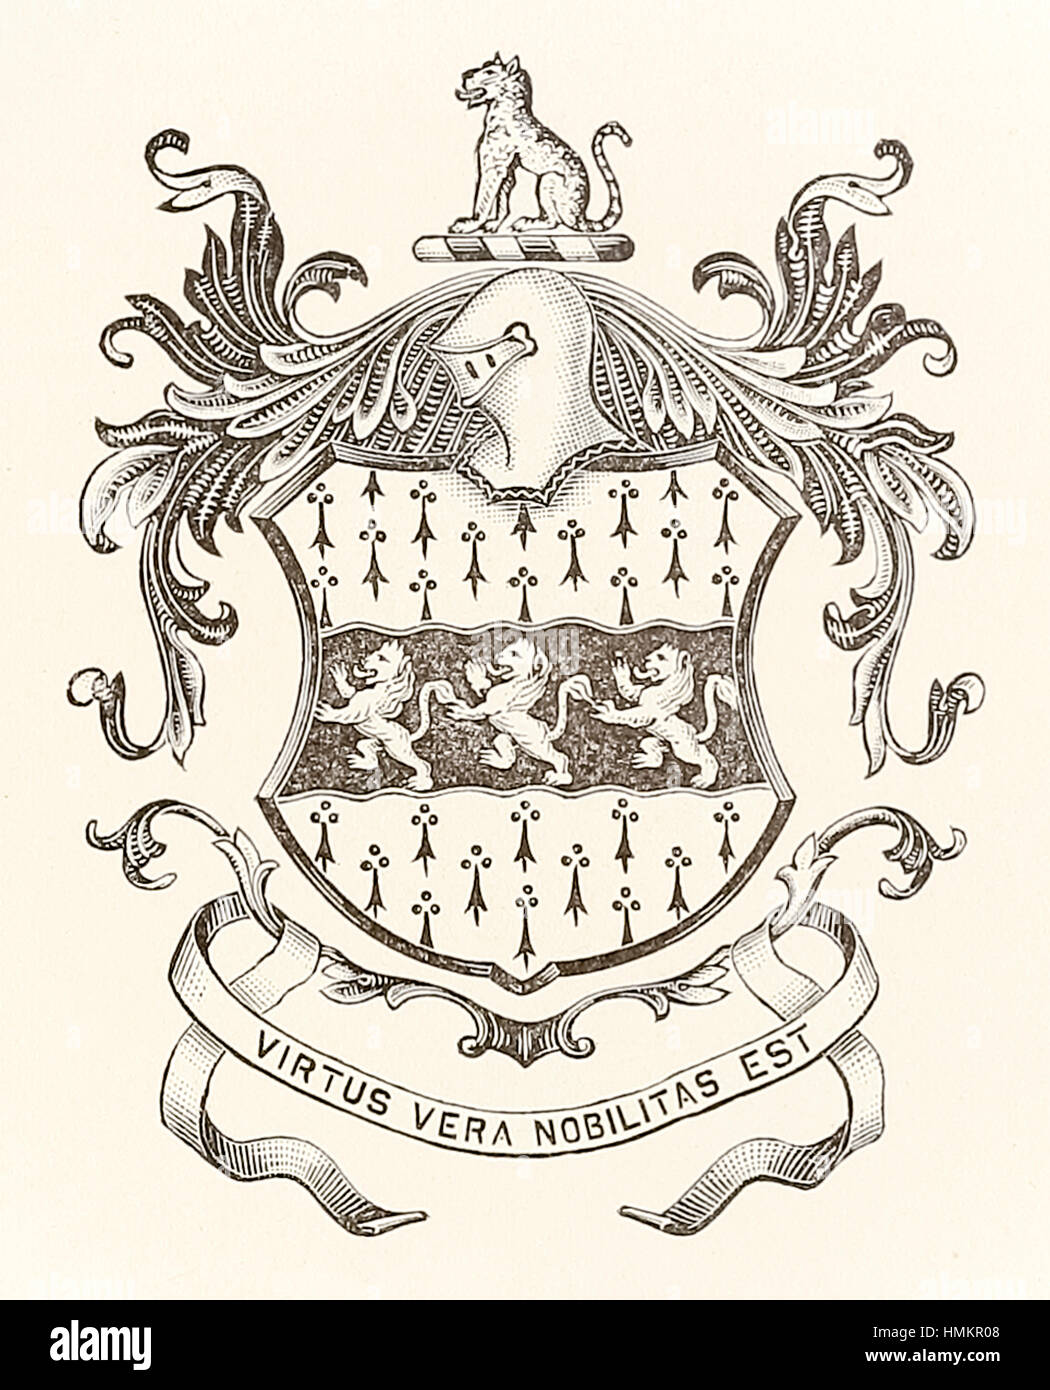 Réalisation d'Héraldique William Mather de Salop (Shropshire, Angleterre) avec 3 lions et la devise "Virtus Vera Nobilitas Est' (la noblesse est la vertu) vers 1600. Banque D'Images